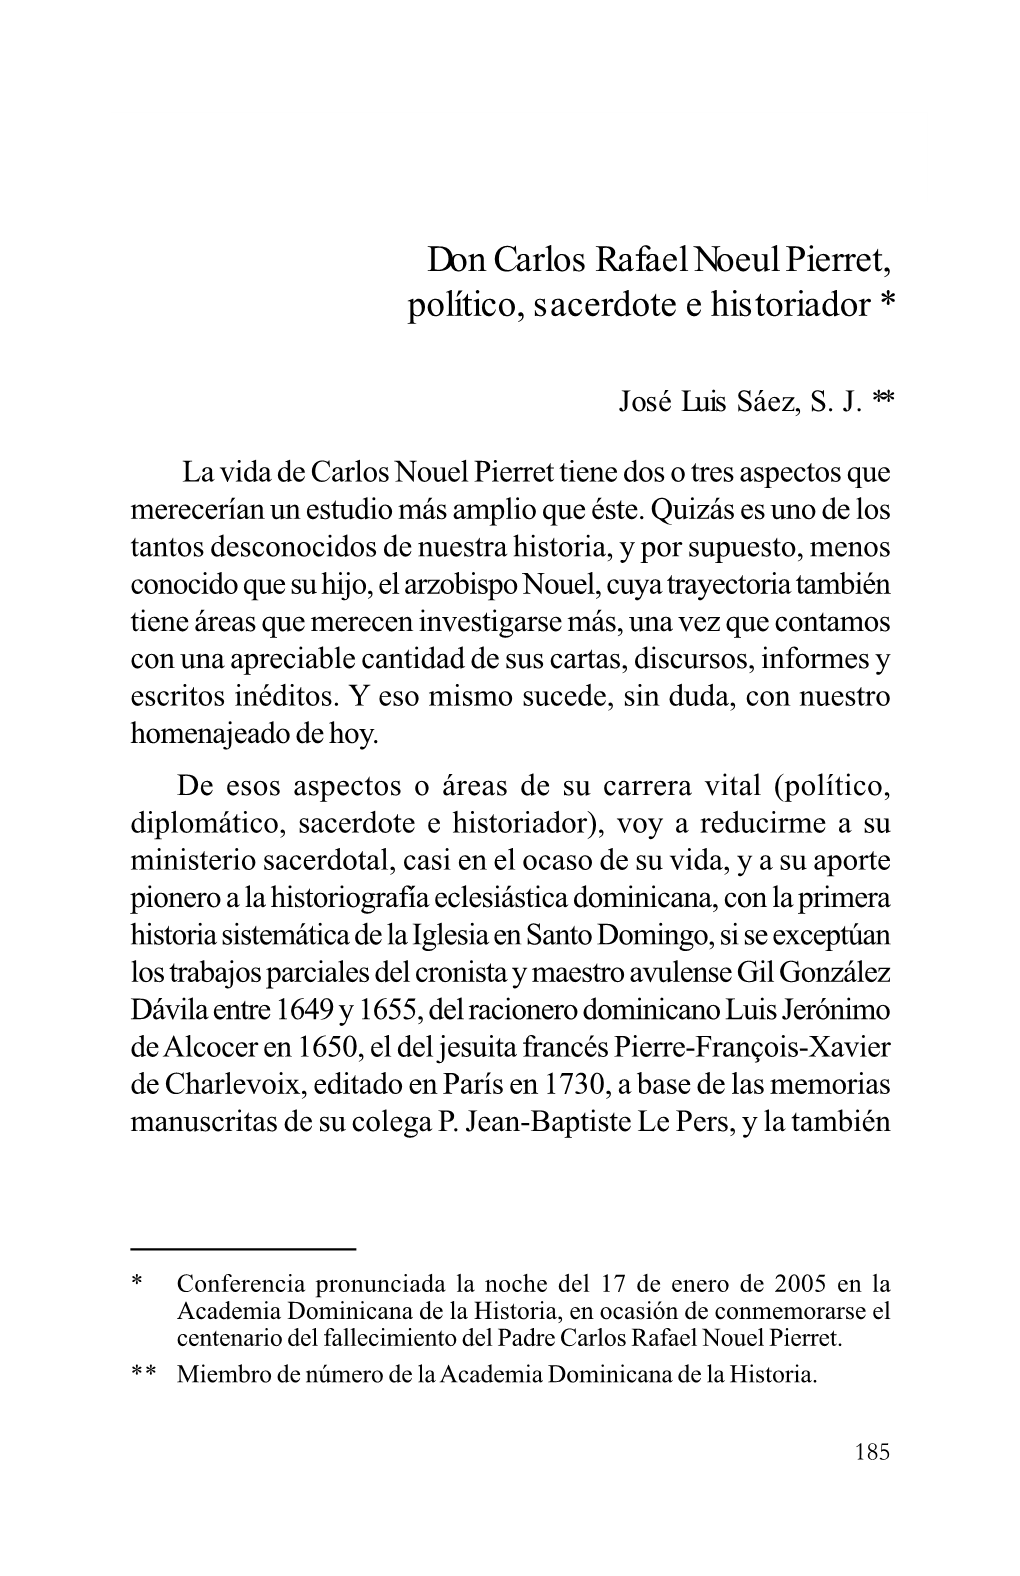 Don Carlos Rafael Nouel Pierret, Político, Sacerdote E Historiador